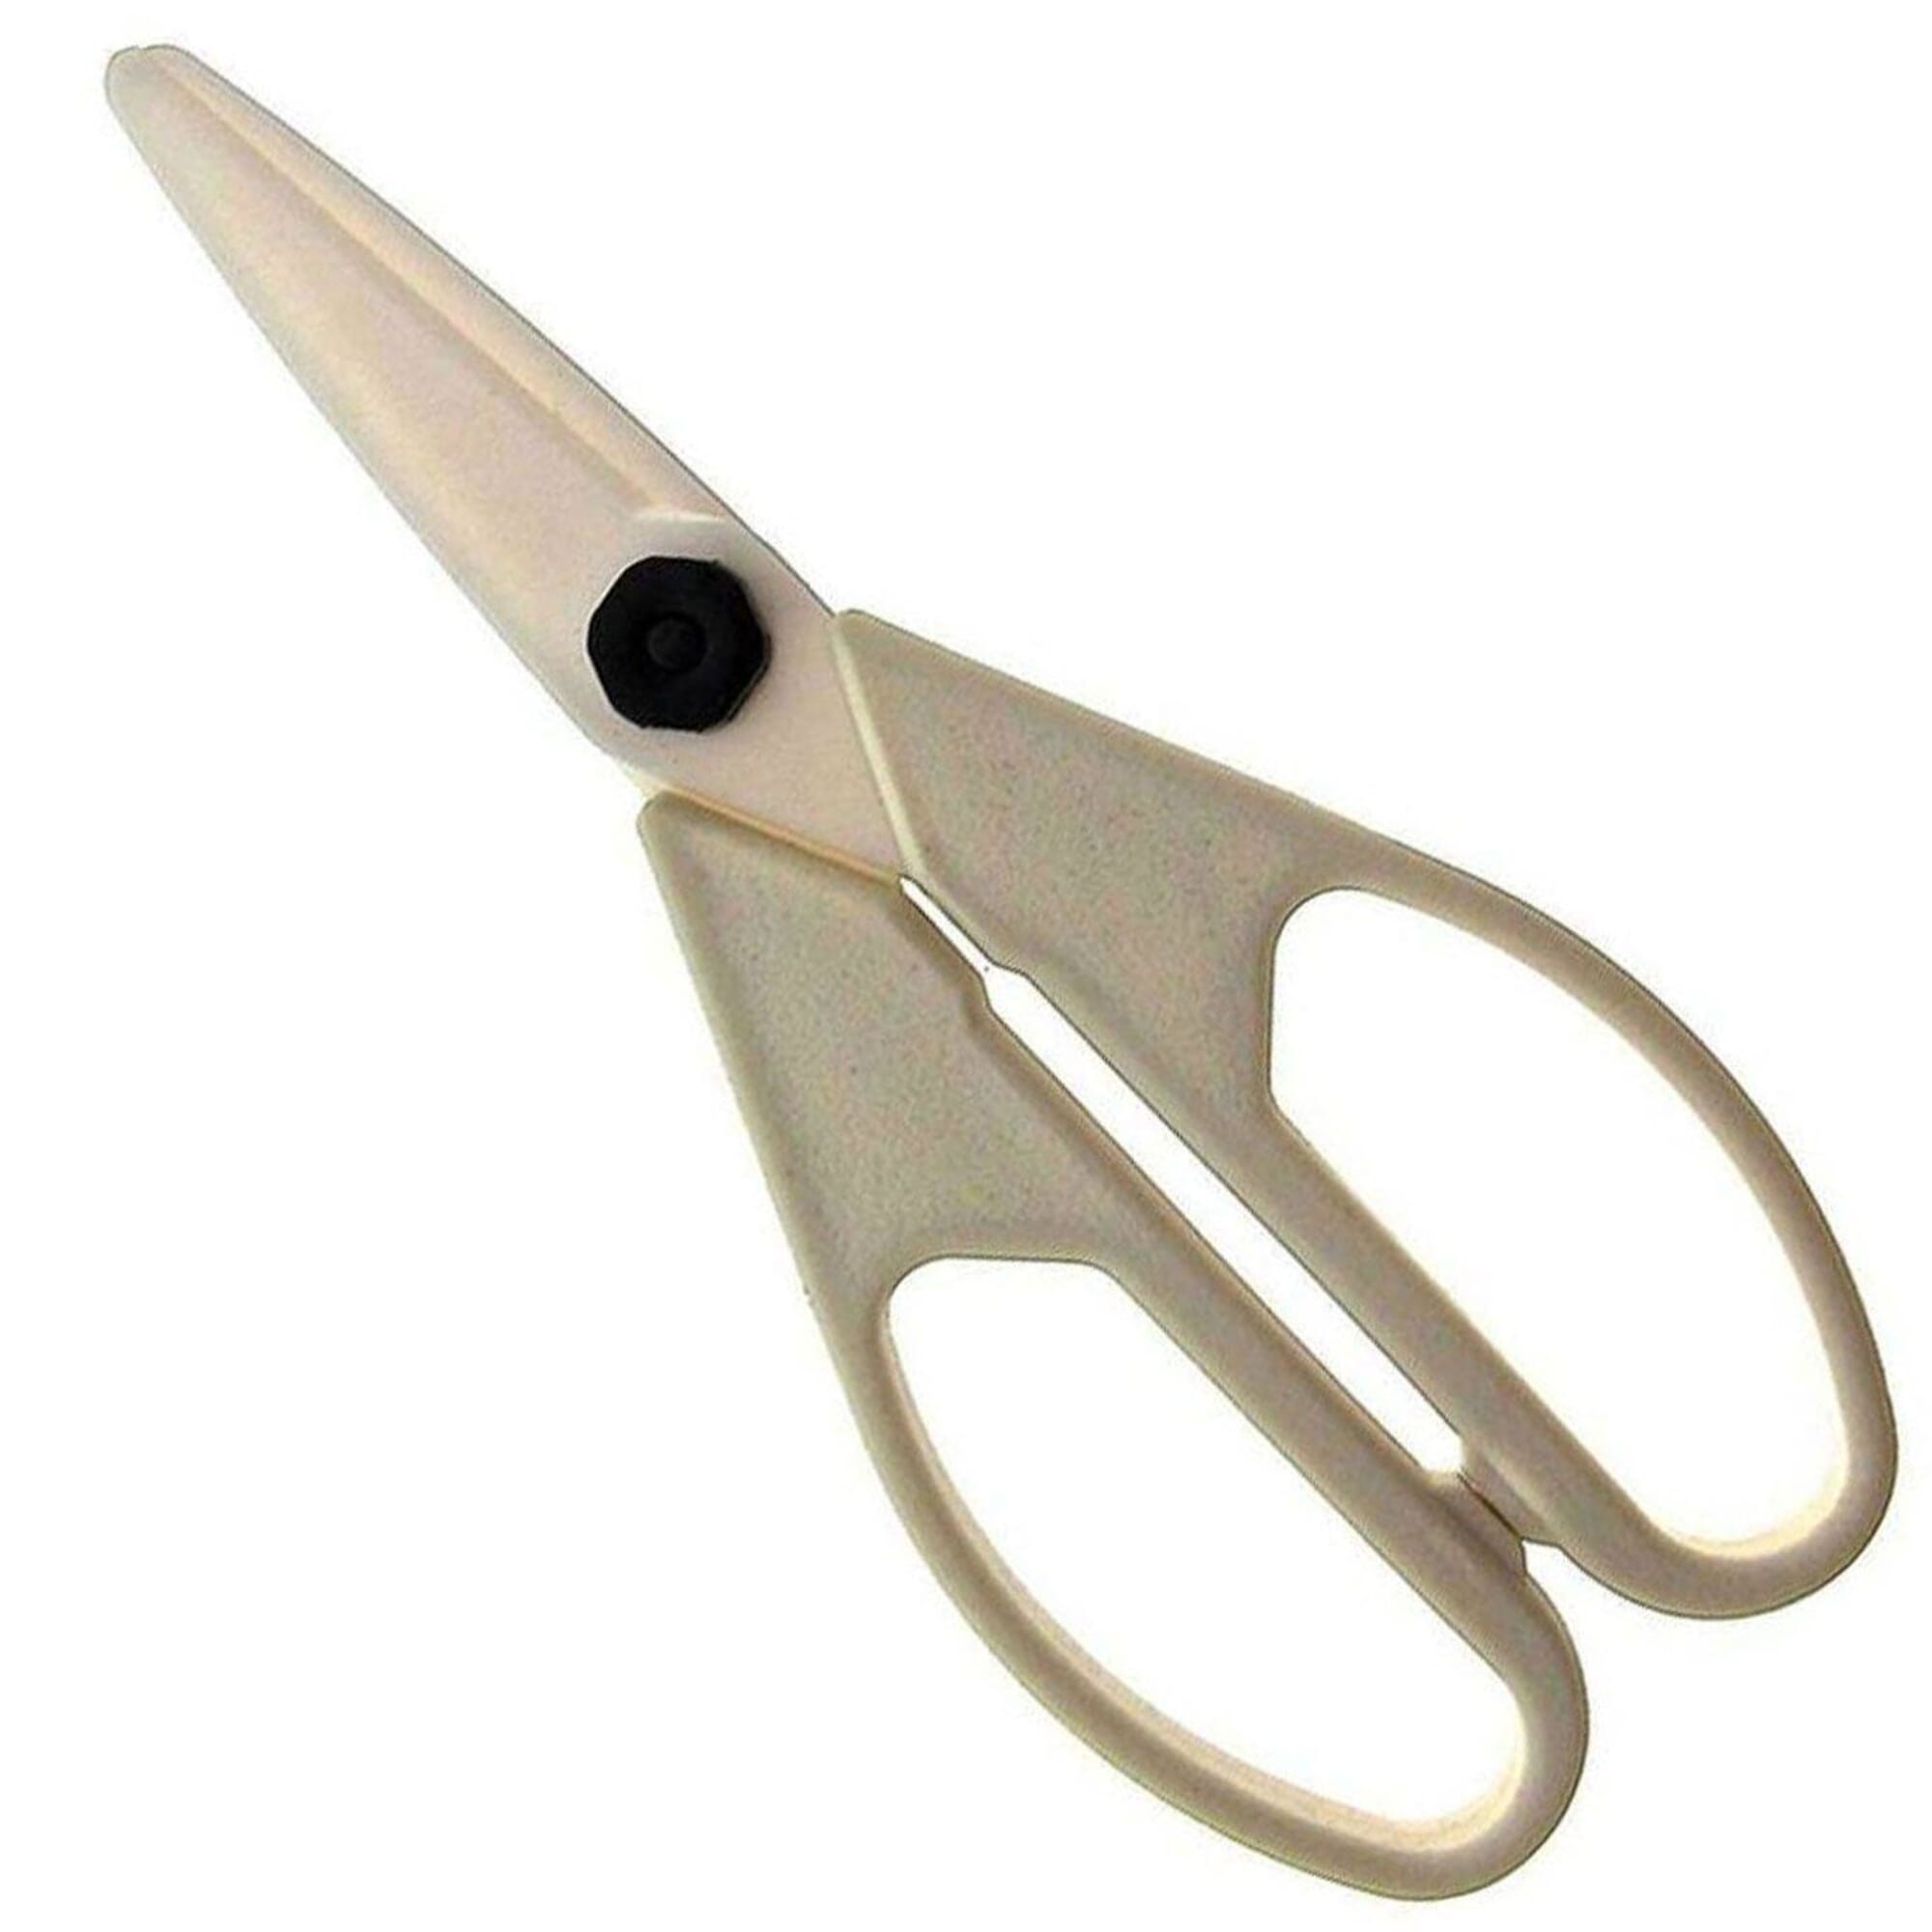 Japanese Kitchen Scissors - Suncraft - For left handed